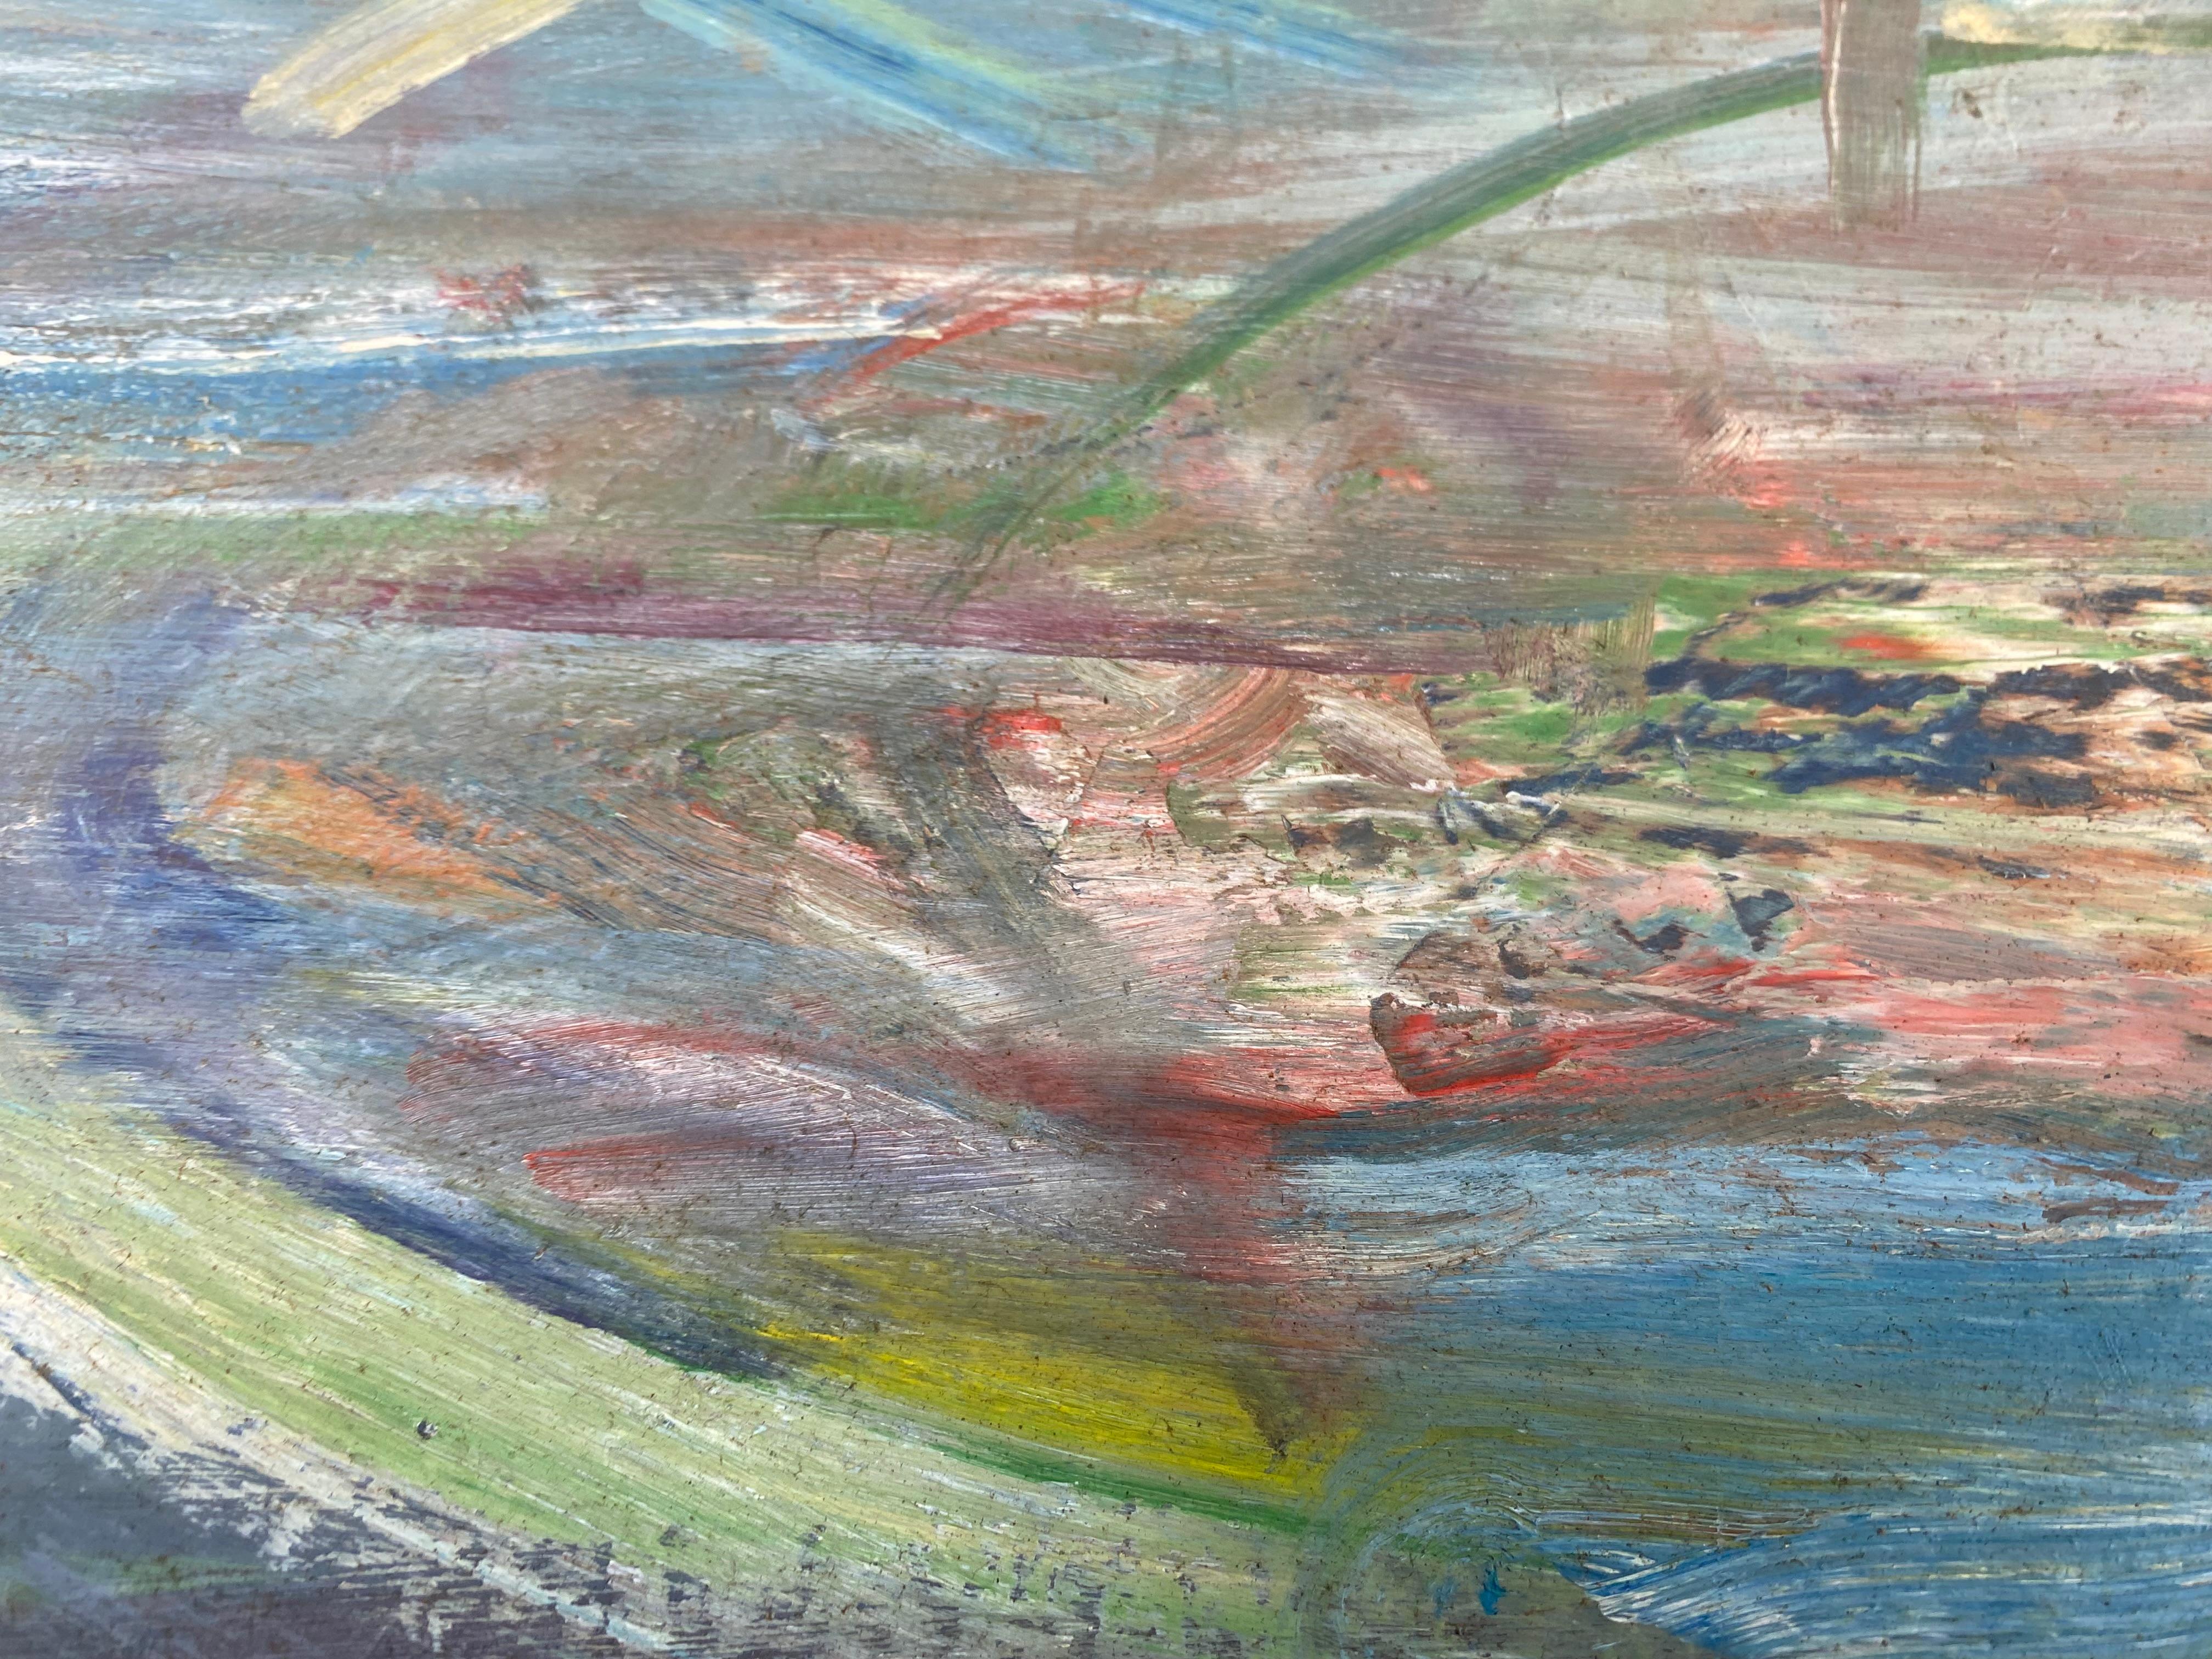 Peinture abstraite vintage de Warren Fischer sur toile de lin.

Est proposée à la vente une peinture abstraite figurative sur toile de lin de l'artiste américain Warren Fischer (1943-2001). Le tableau fait partie de la succession de l'artiste.